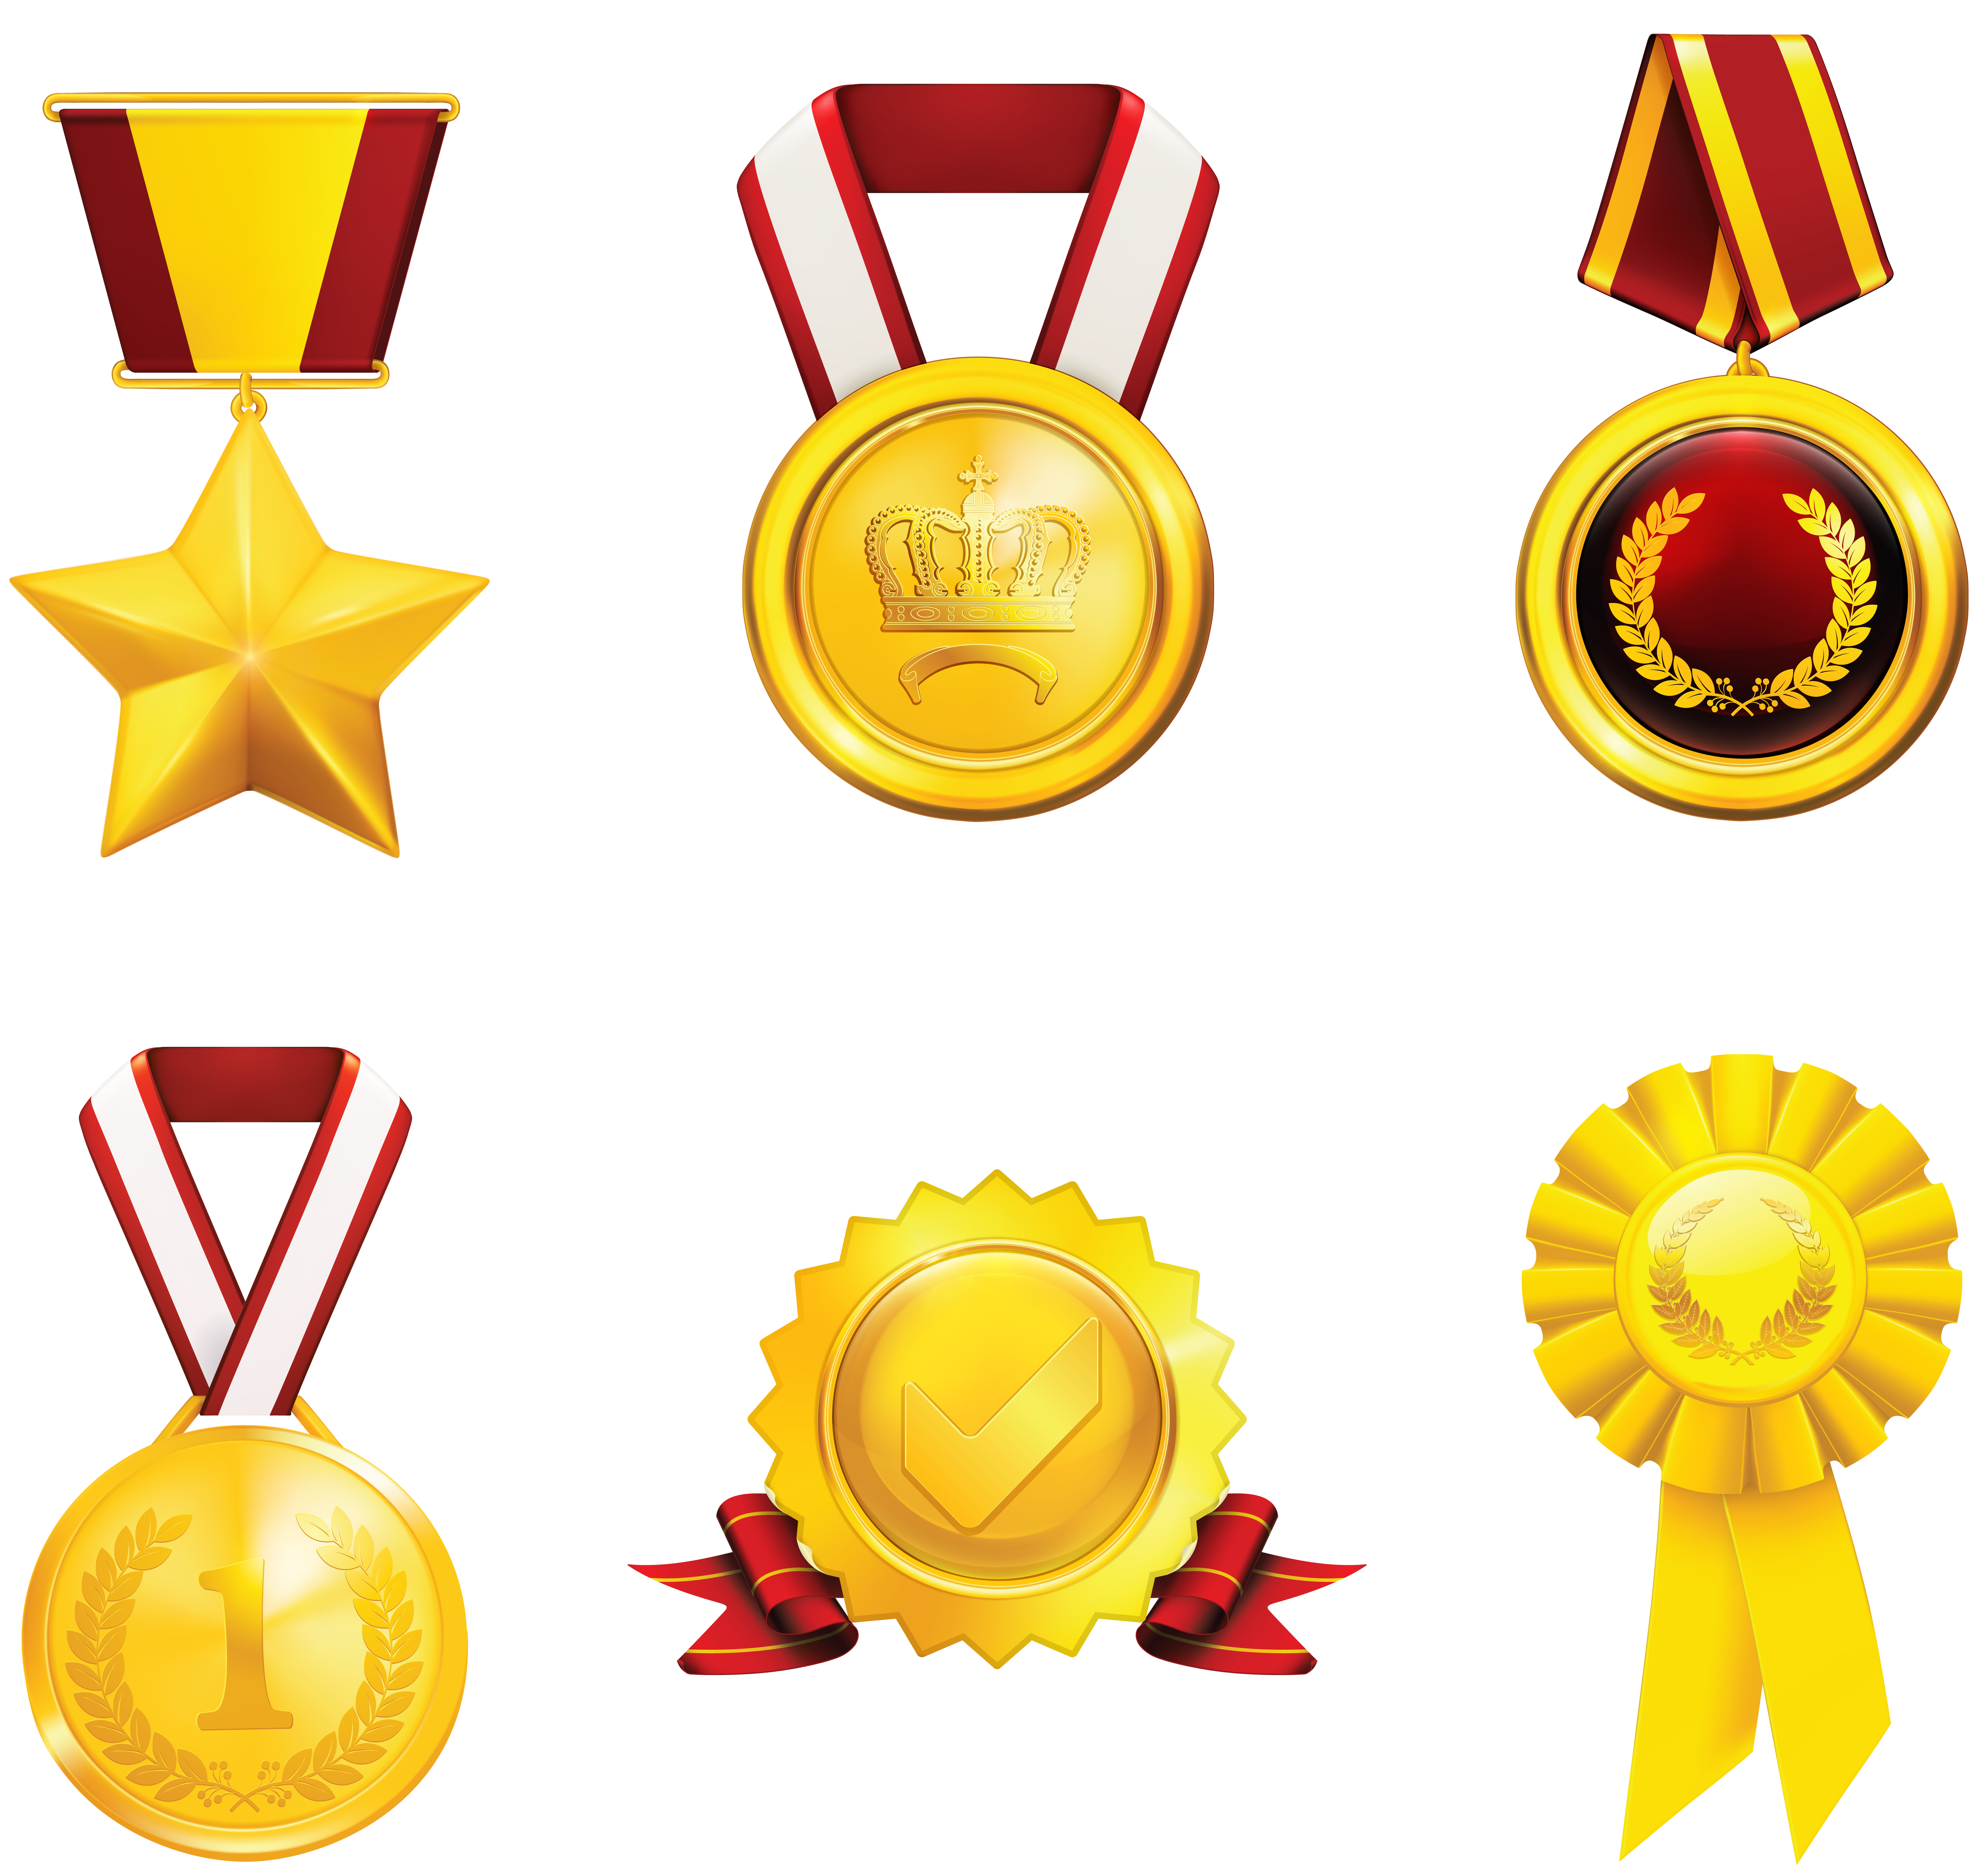 Prix, médailles